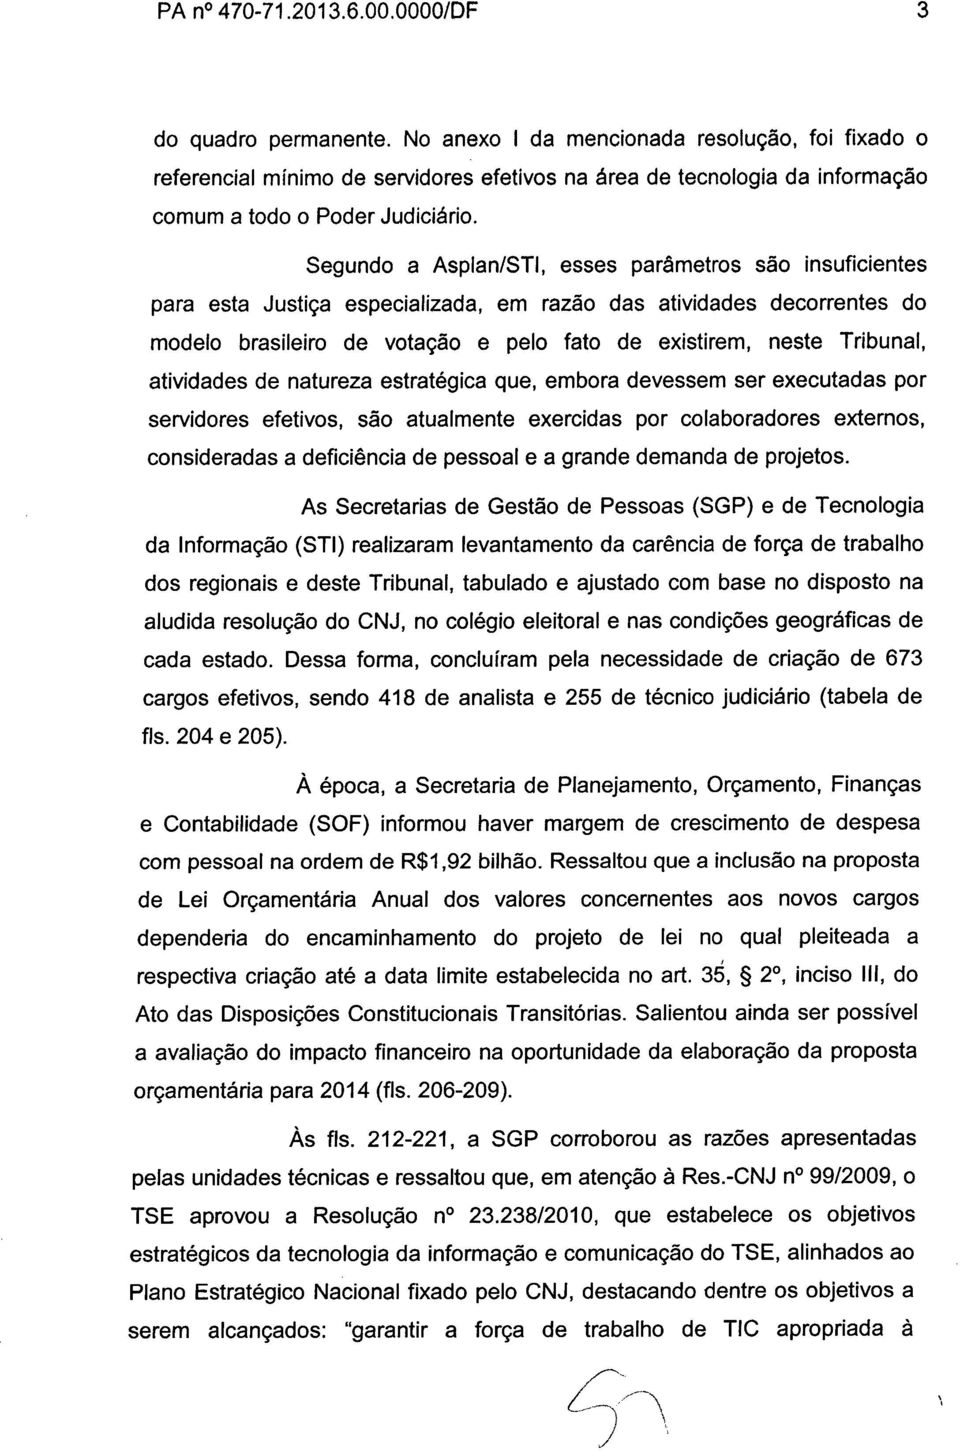 Segundo a Asplan/STI, esses parâmetros são insuficientes para esta Justiça especializada, em razão das atividades decorrentes do modelo brasileiro de votação e pelo fato de existirem, neste Tribunal,